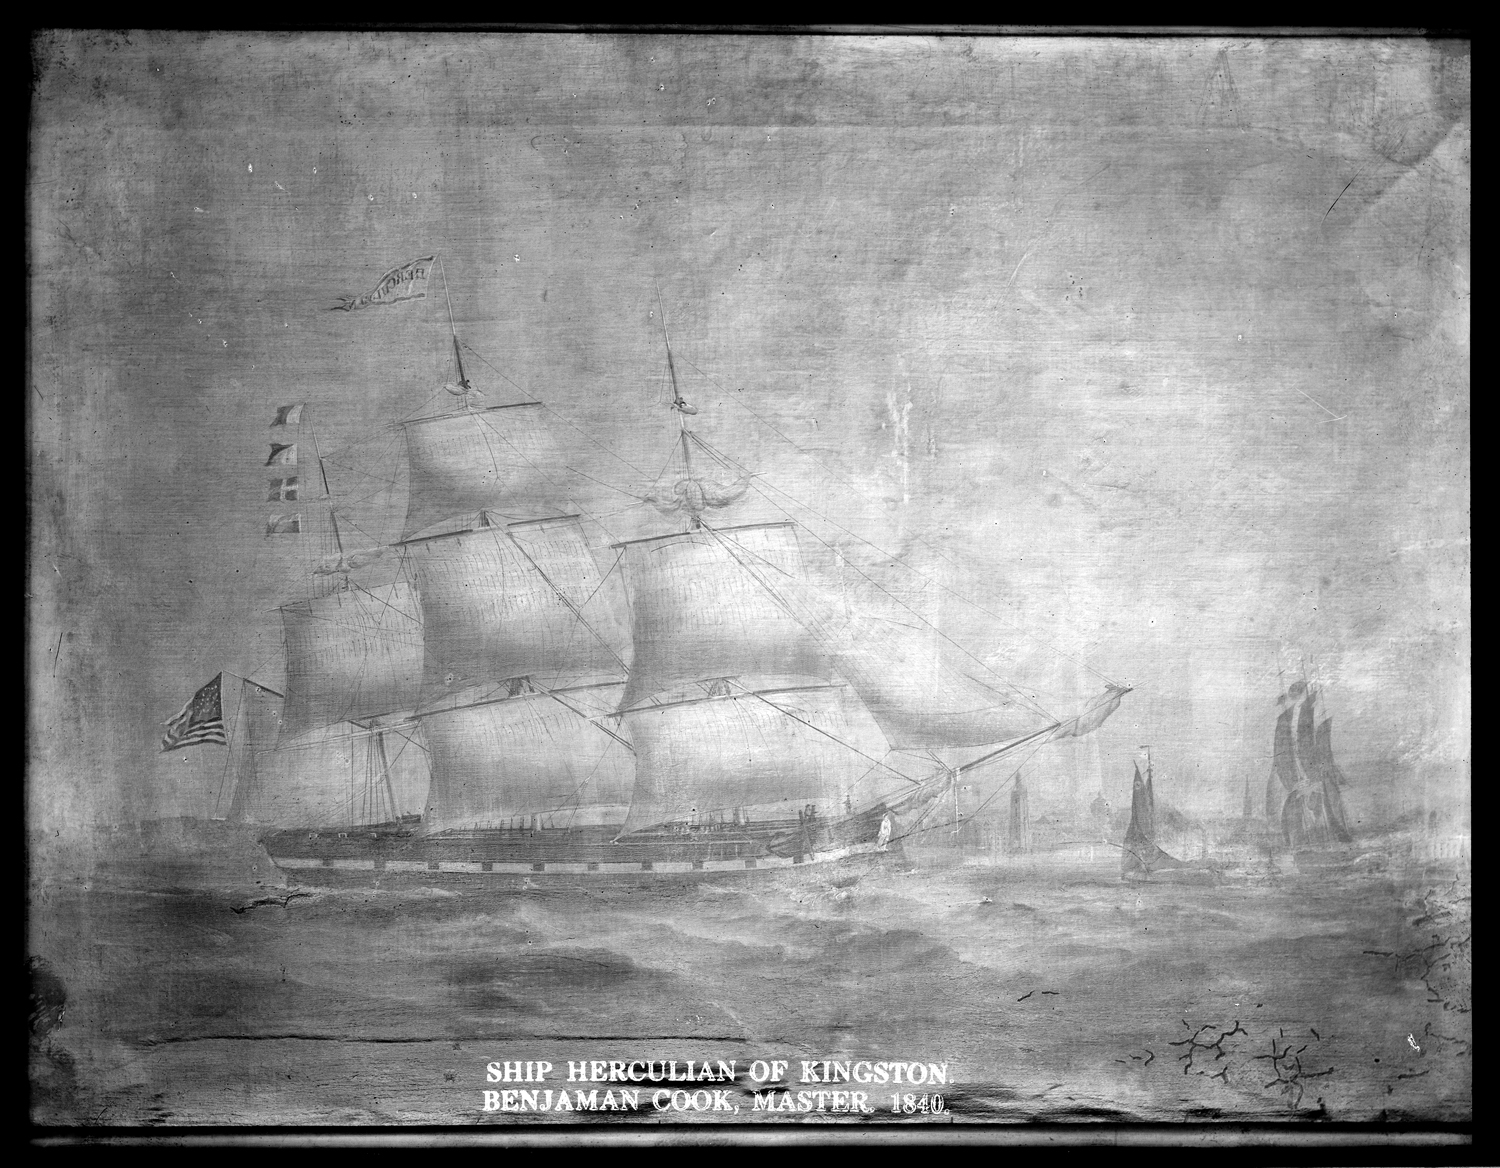 Ship Herculean of Kingston, Benjamin Cook, Master, 1840